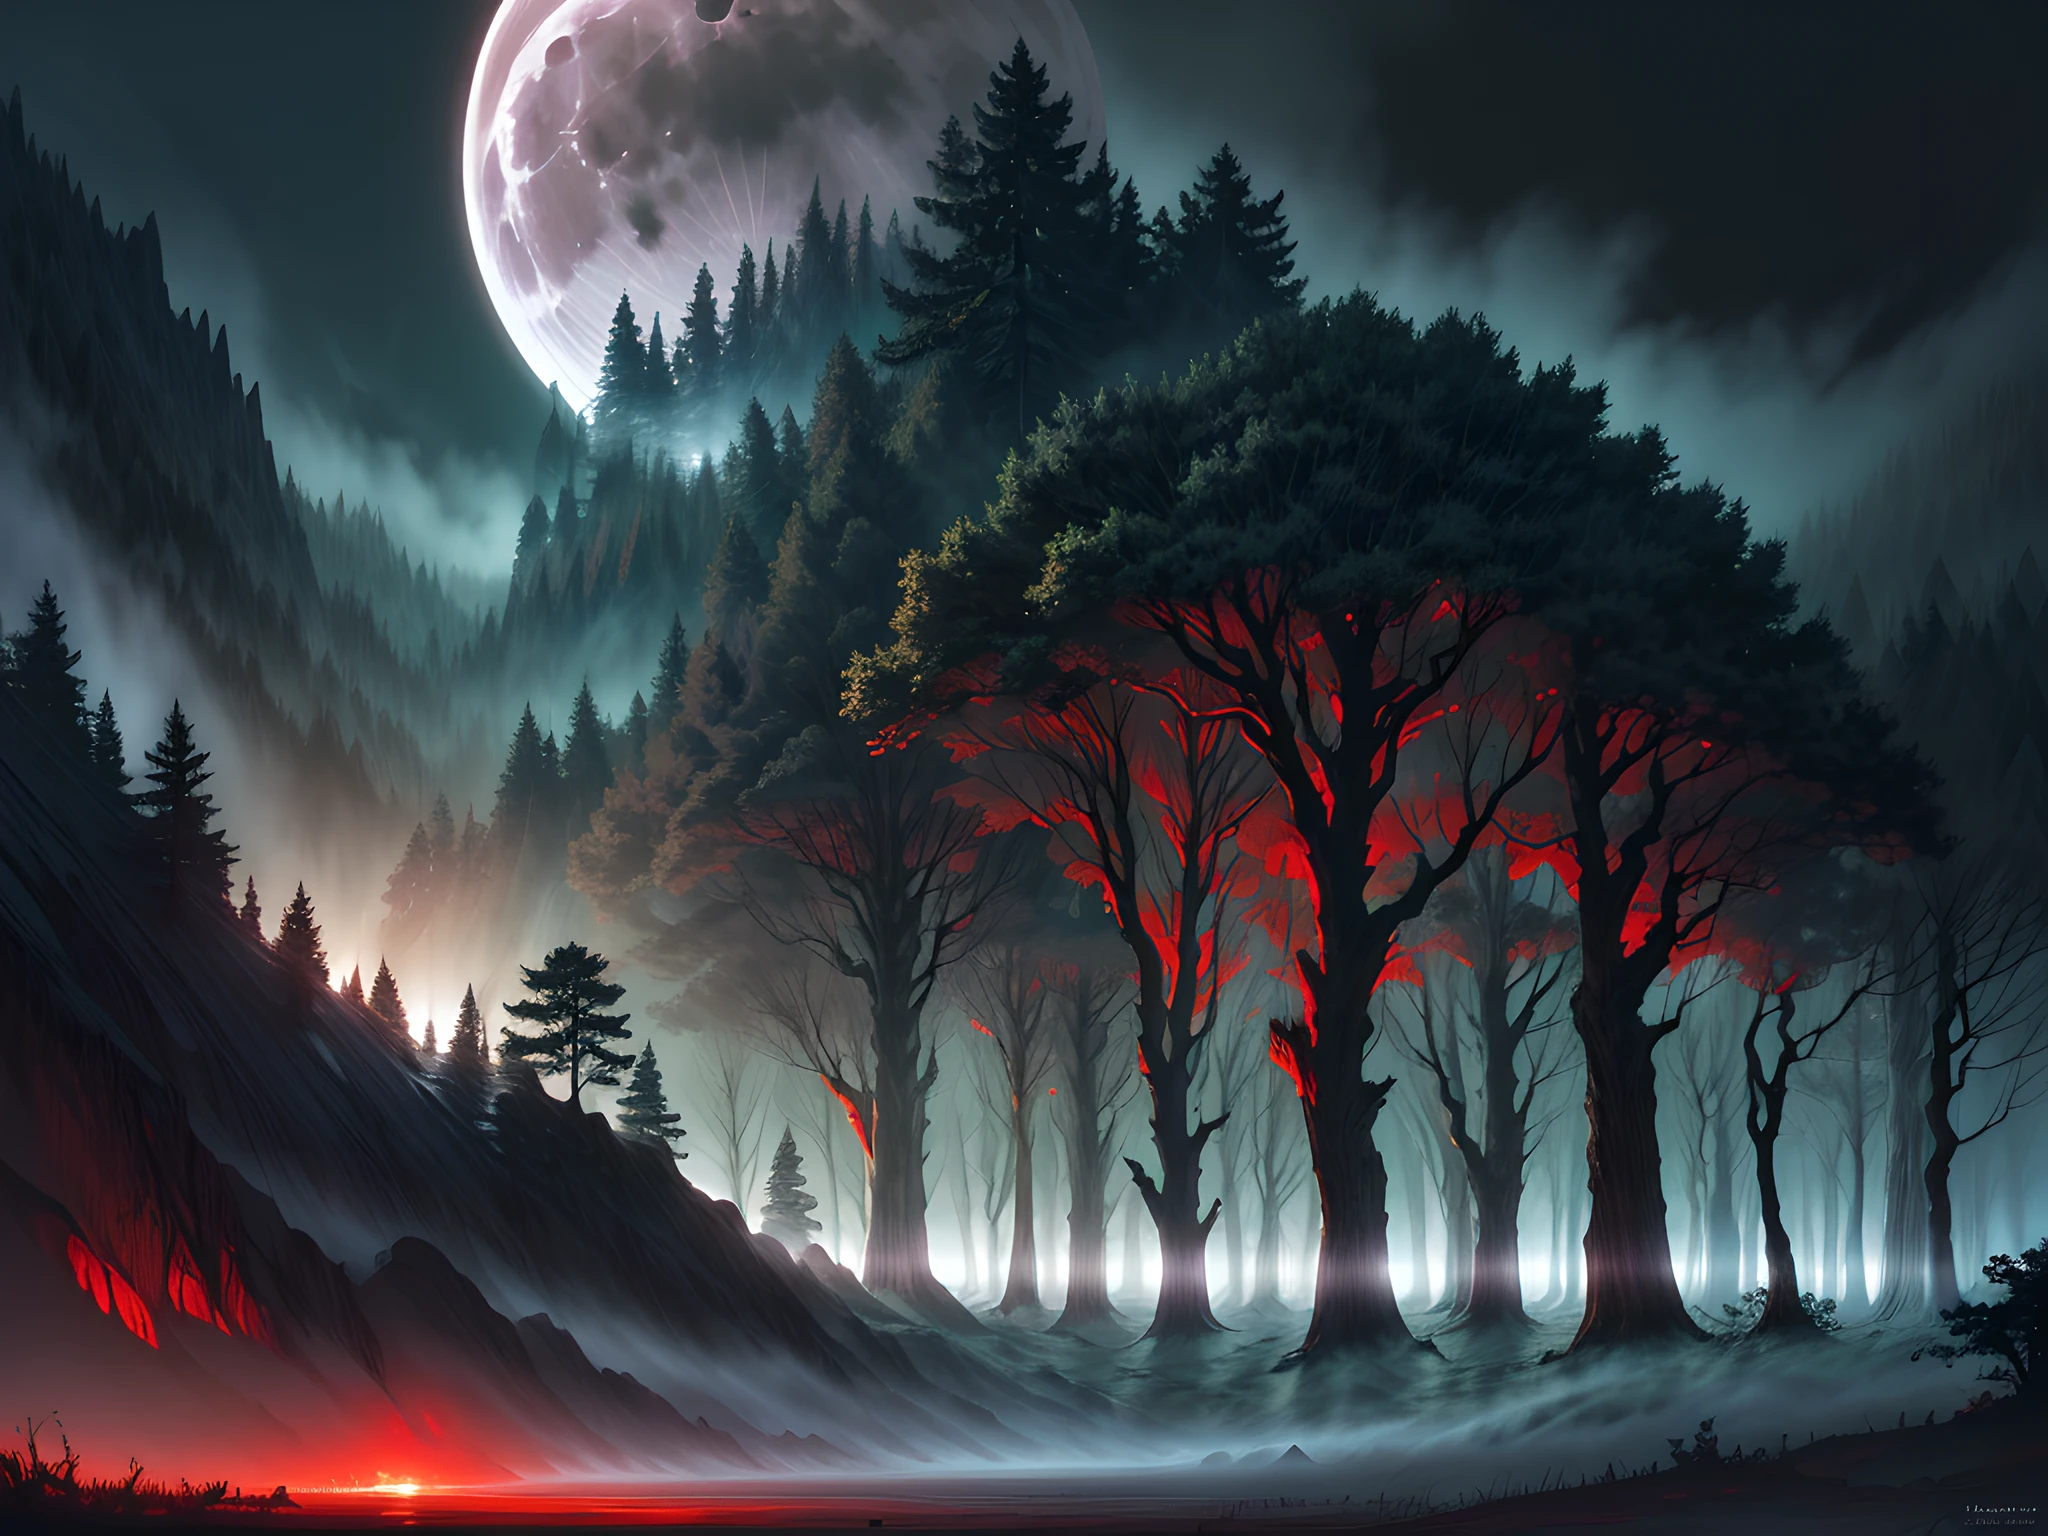 Arte De Fantasía, arte de rol, tiro ultra ancho, CRUDO, Fotorrealista, Una imagen de un bosque de fantasía oscura, niebla que se eleva desde el suelo que se arrastra, Es de noche, La luna se eleva en el horizonte, Sin embargo, hay una (Par de ojos rojos de depredador) que ves entre los árboles,